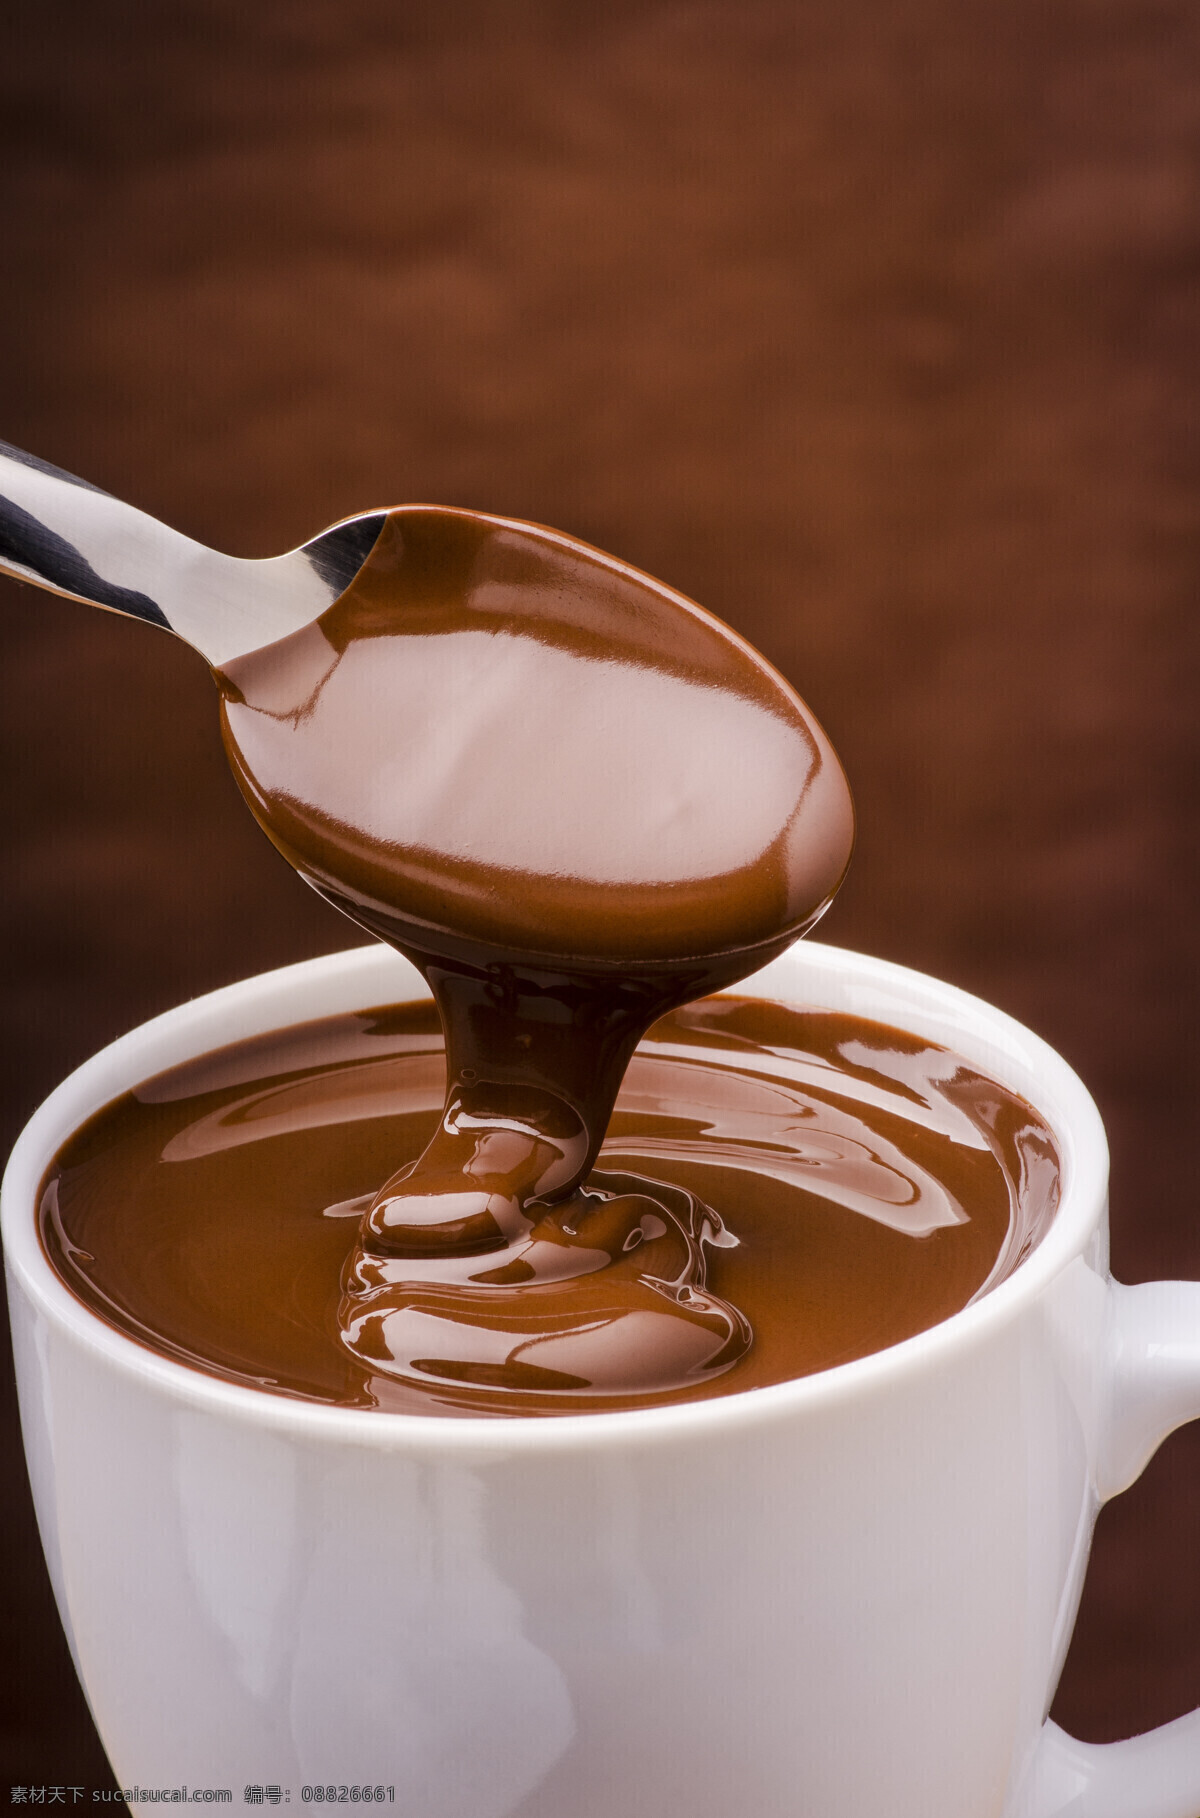 巧克力酱 巧克力 巧克力果 巧克力粉 巧克力球 巧克力素材 各种巧克力球 香浓巧克力 热巧克力 巧克力元素 好吃的巧克力 热可可 香浓 巧克力广告 高热量 餐饮美食 西餐美食